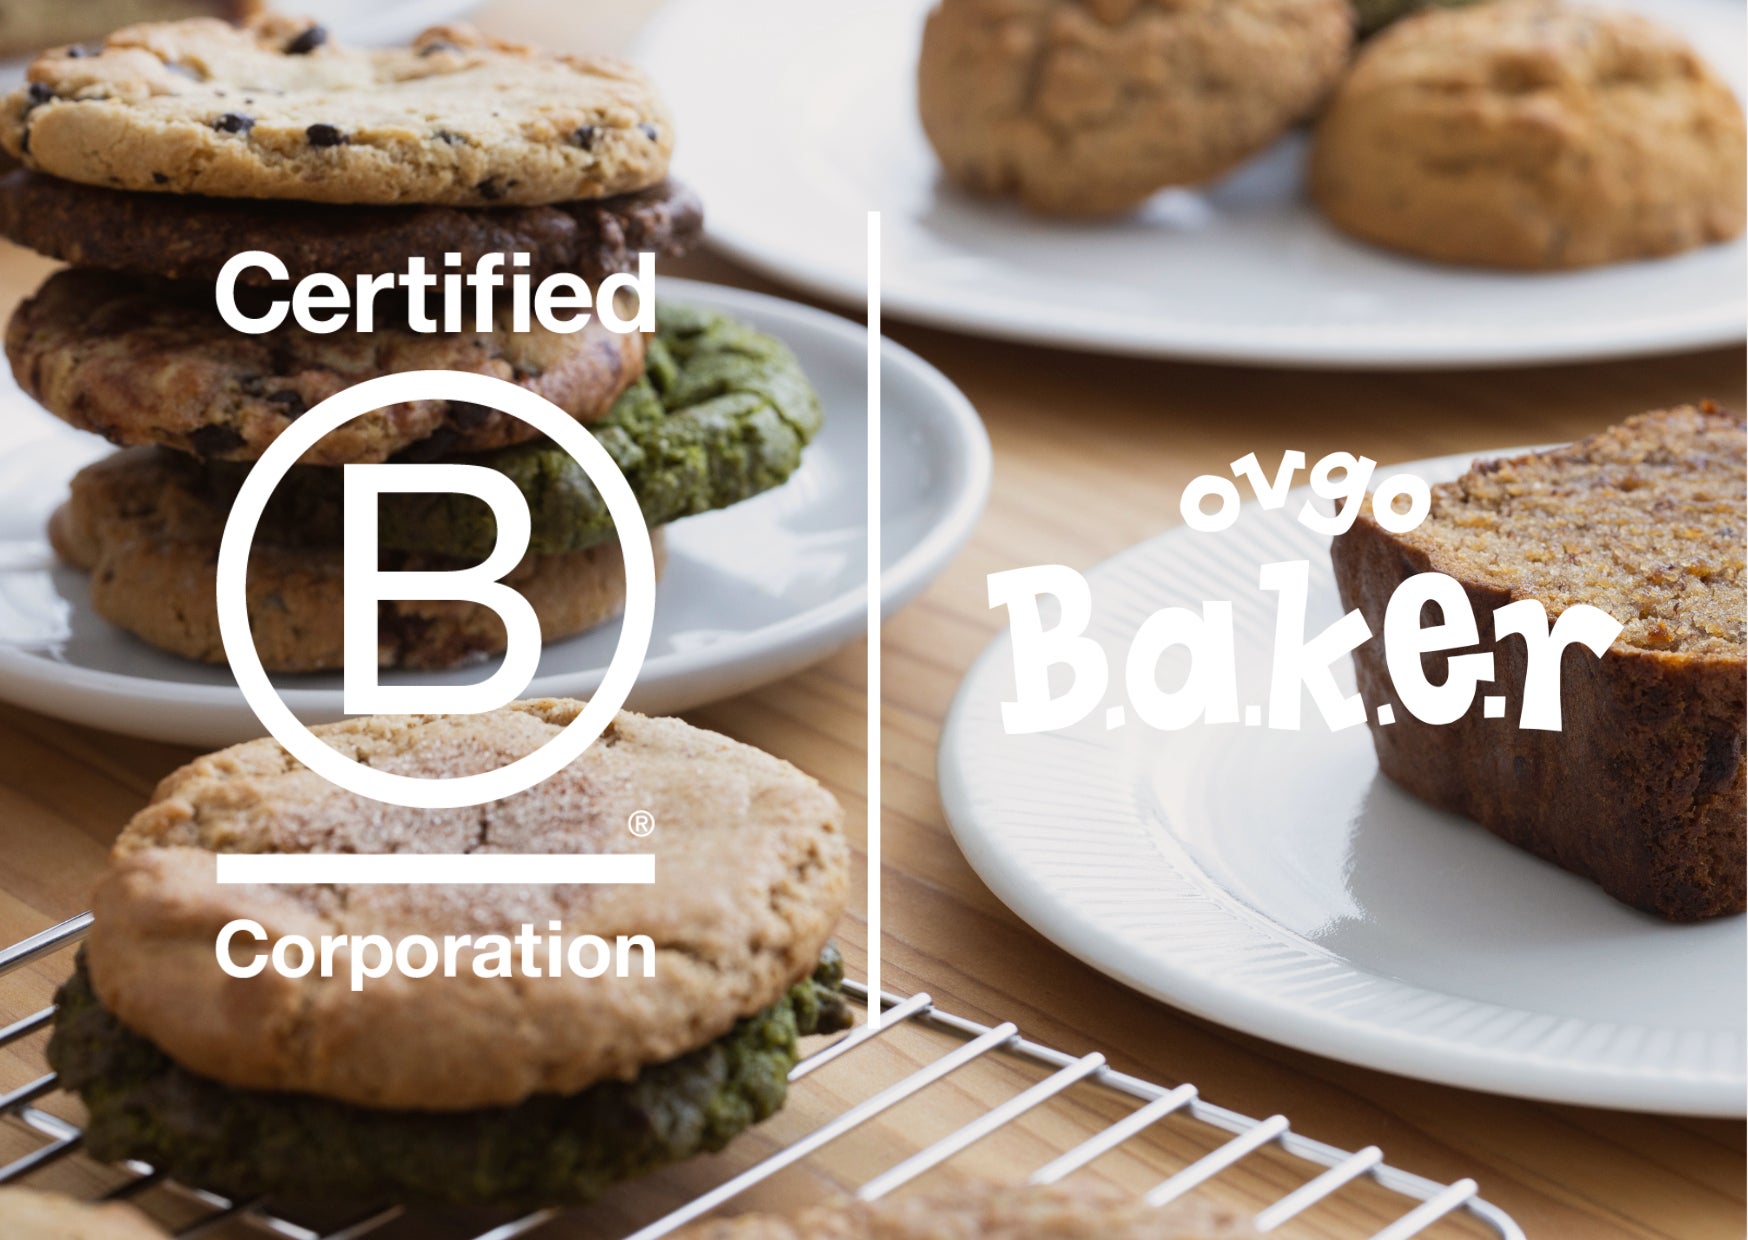 株式会社ovgo、国内の飲食店初となる国際認定制度「B Corporation」を取得